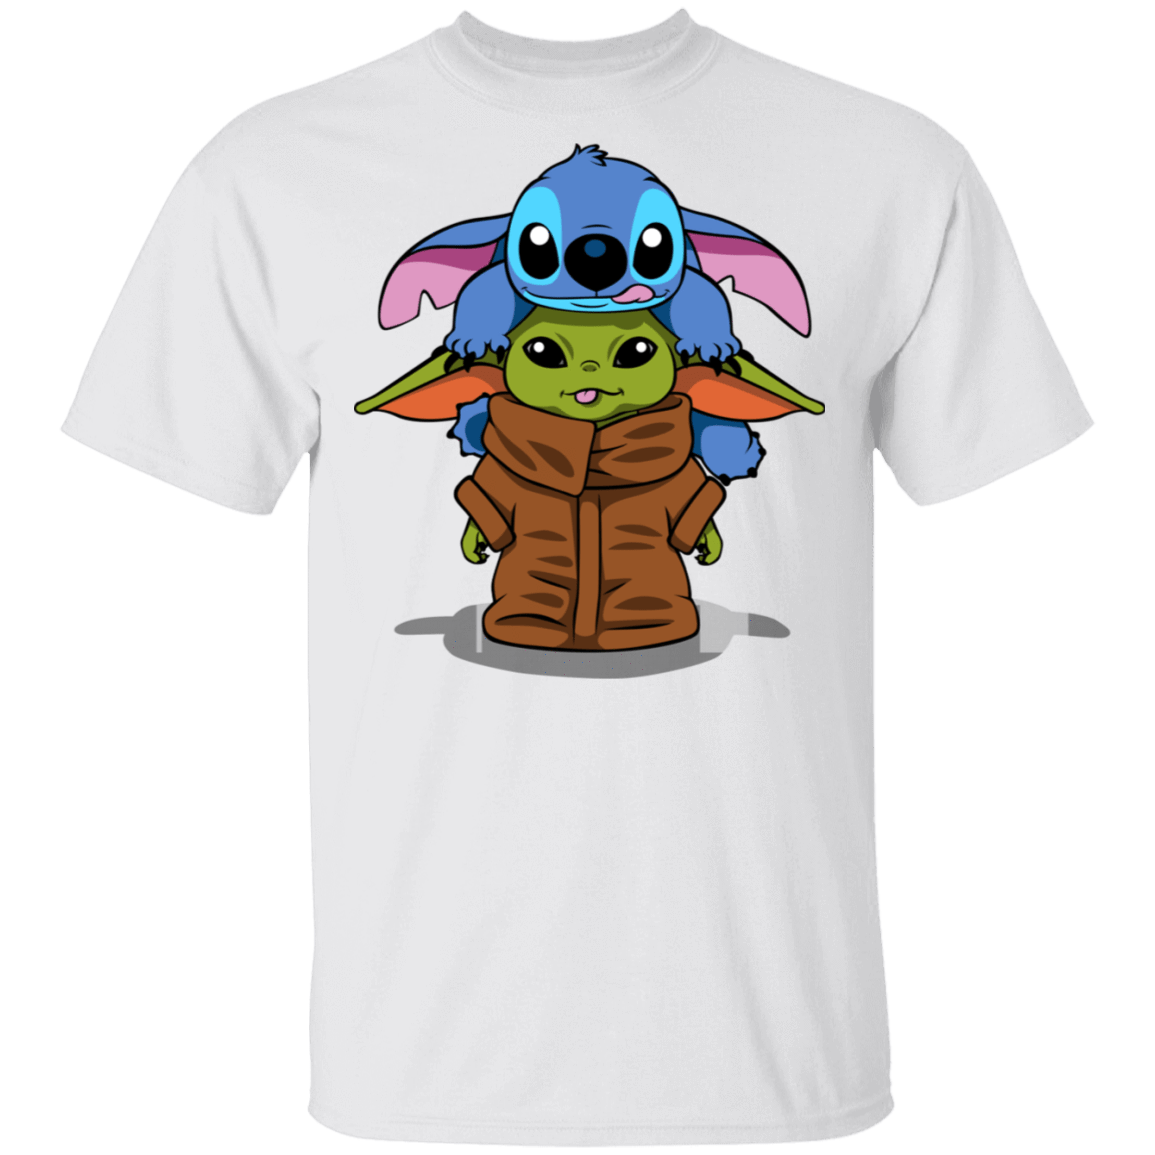 Stitch Yoda shirt